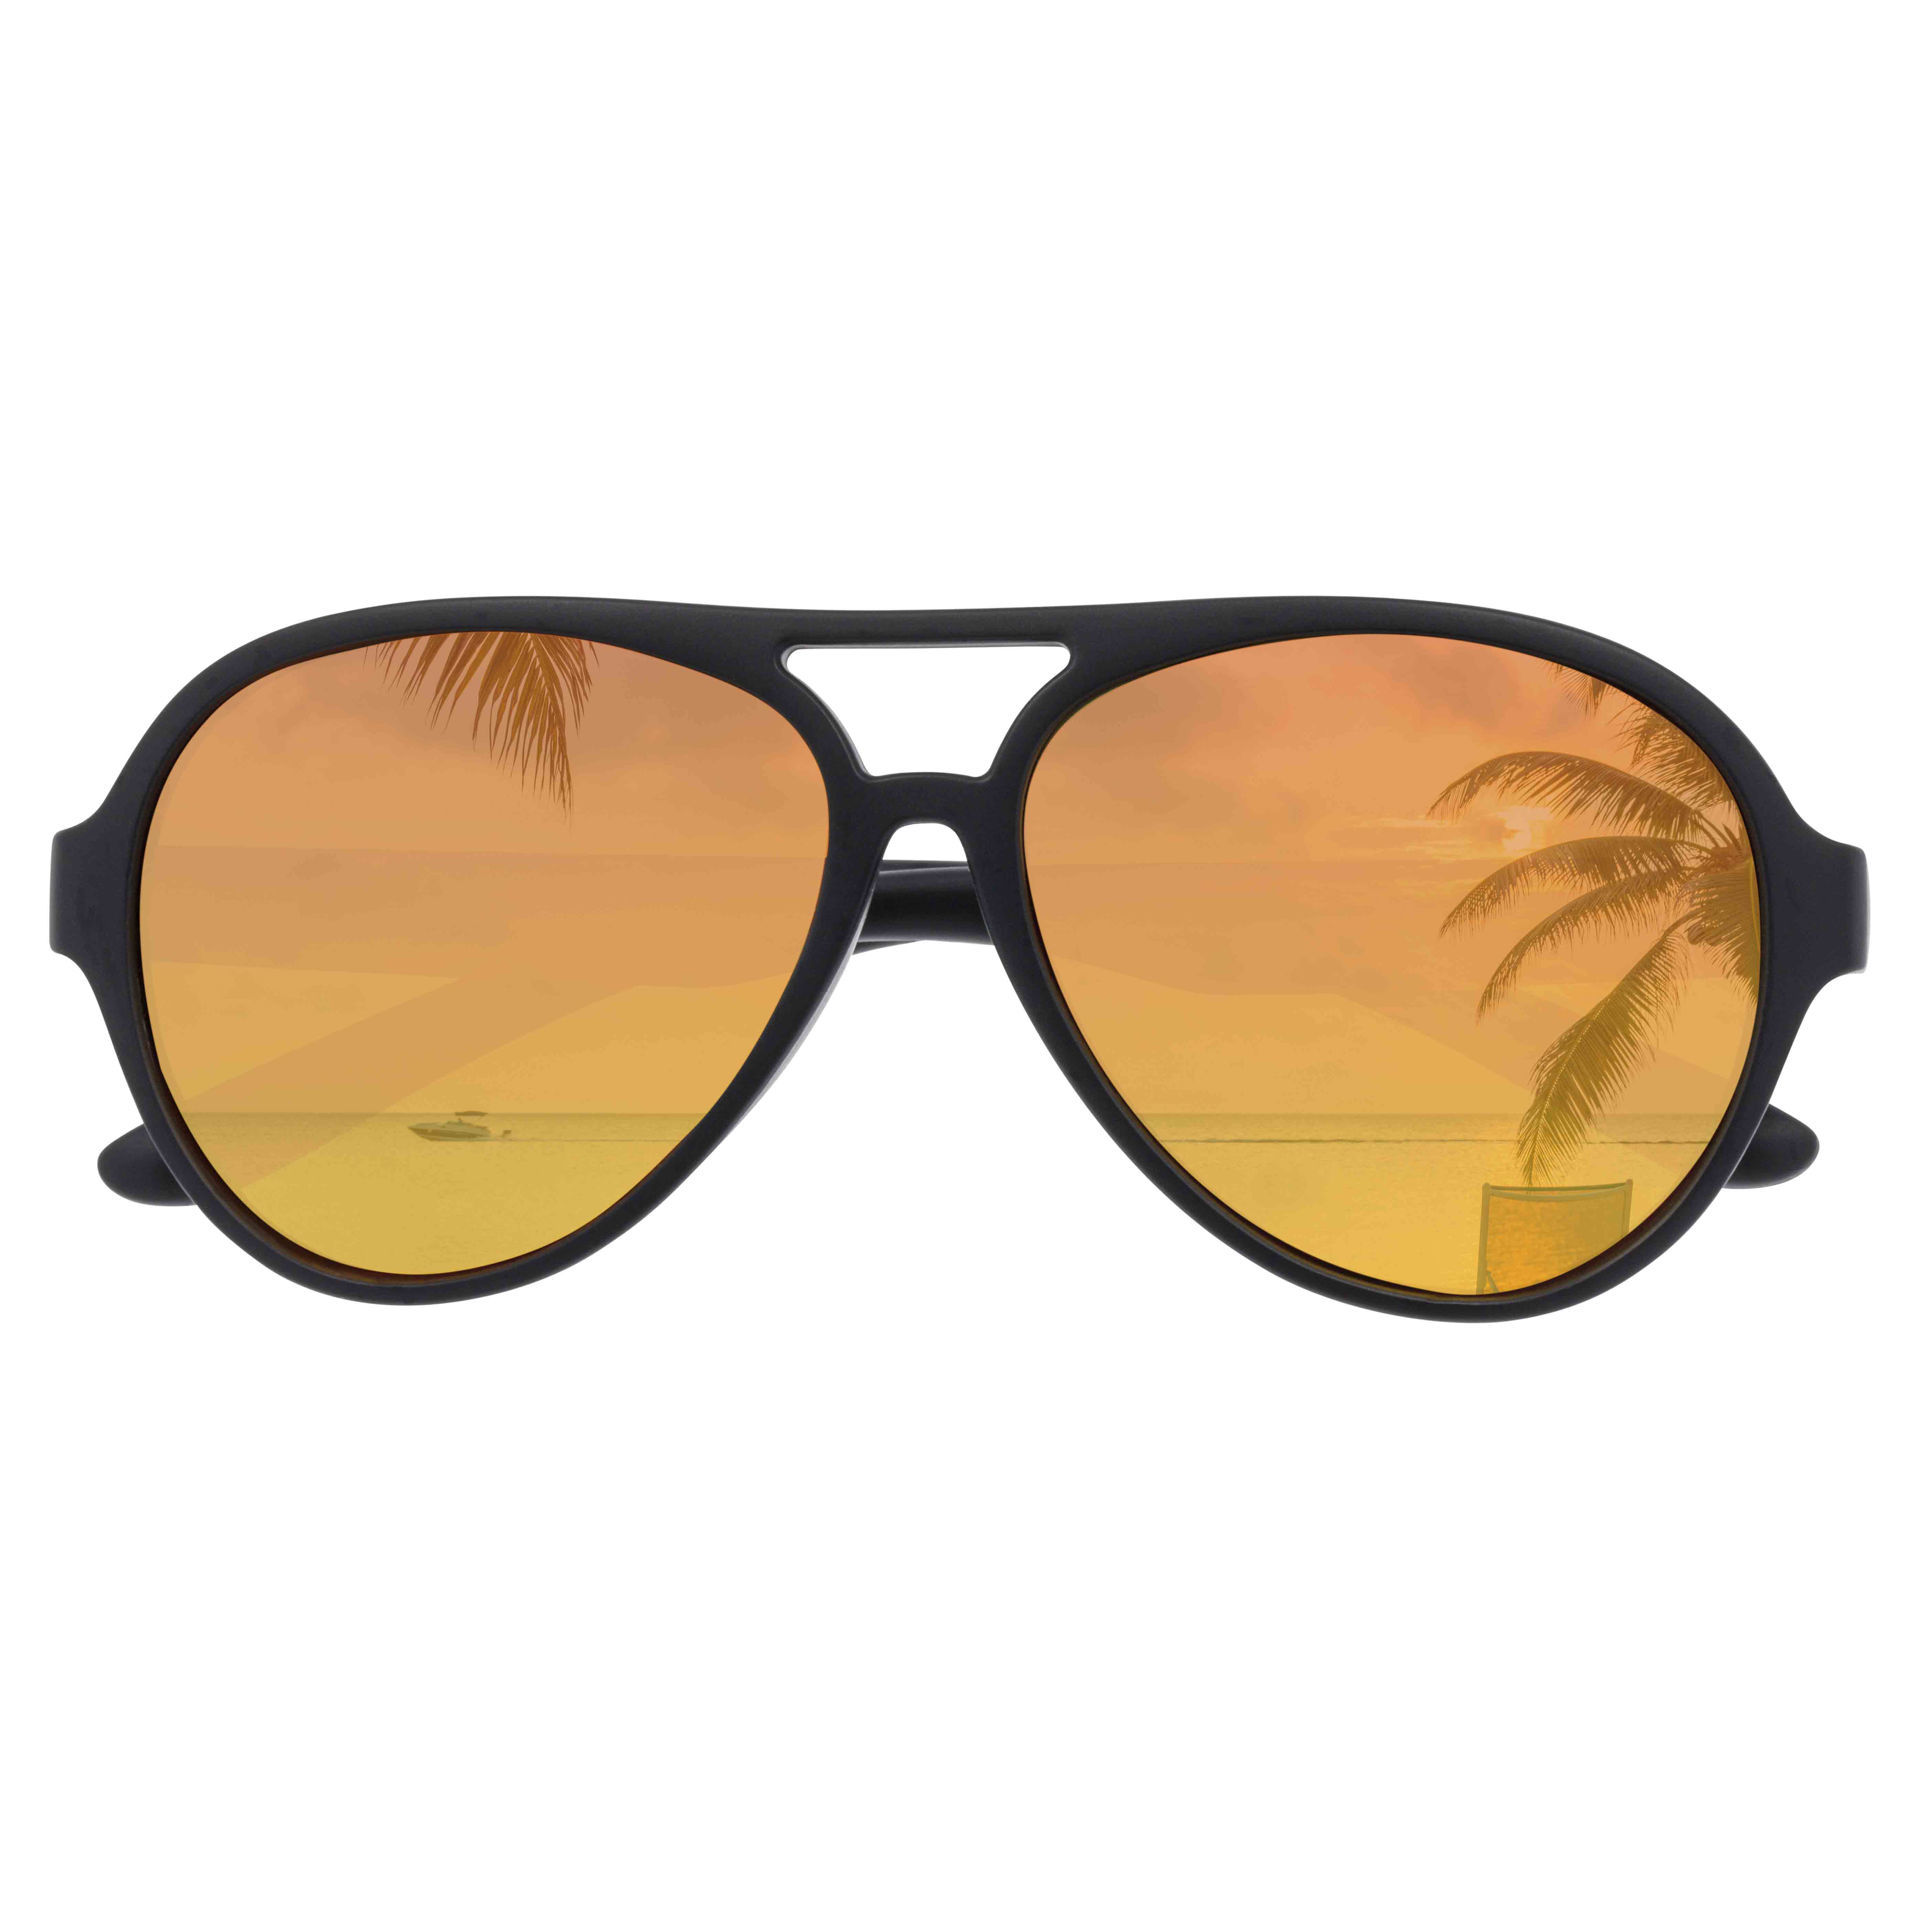 0003621_sunglasses-jamaica-air-black